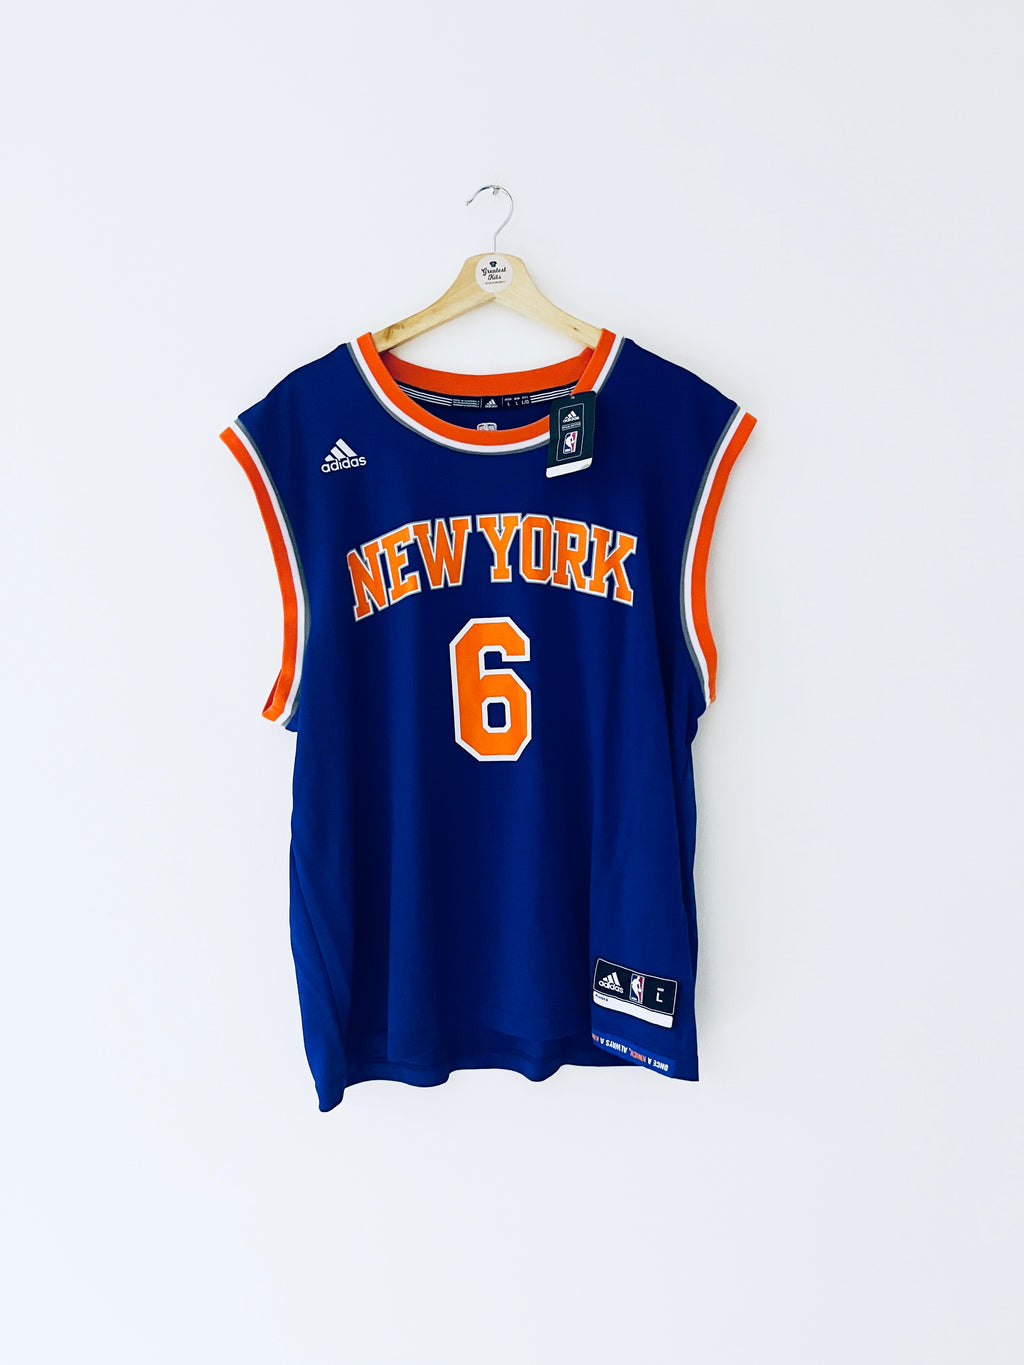 Maillot de route Adidas des New York Knicks 2015-17 Porzingis #6 (L) BNWT